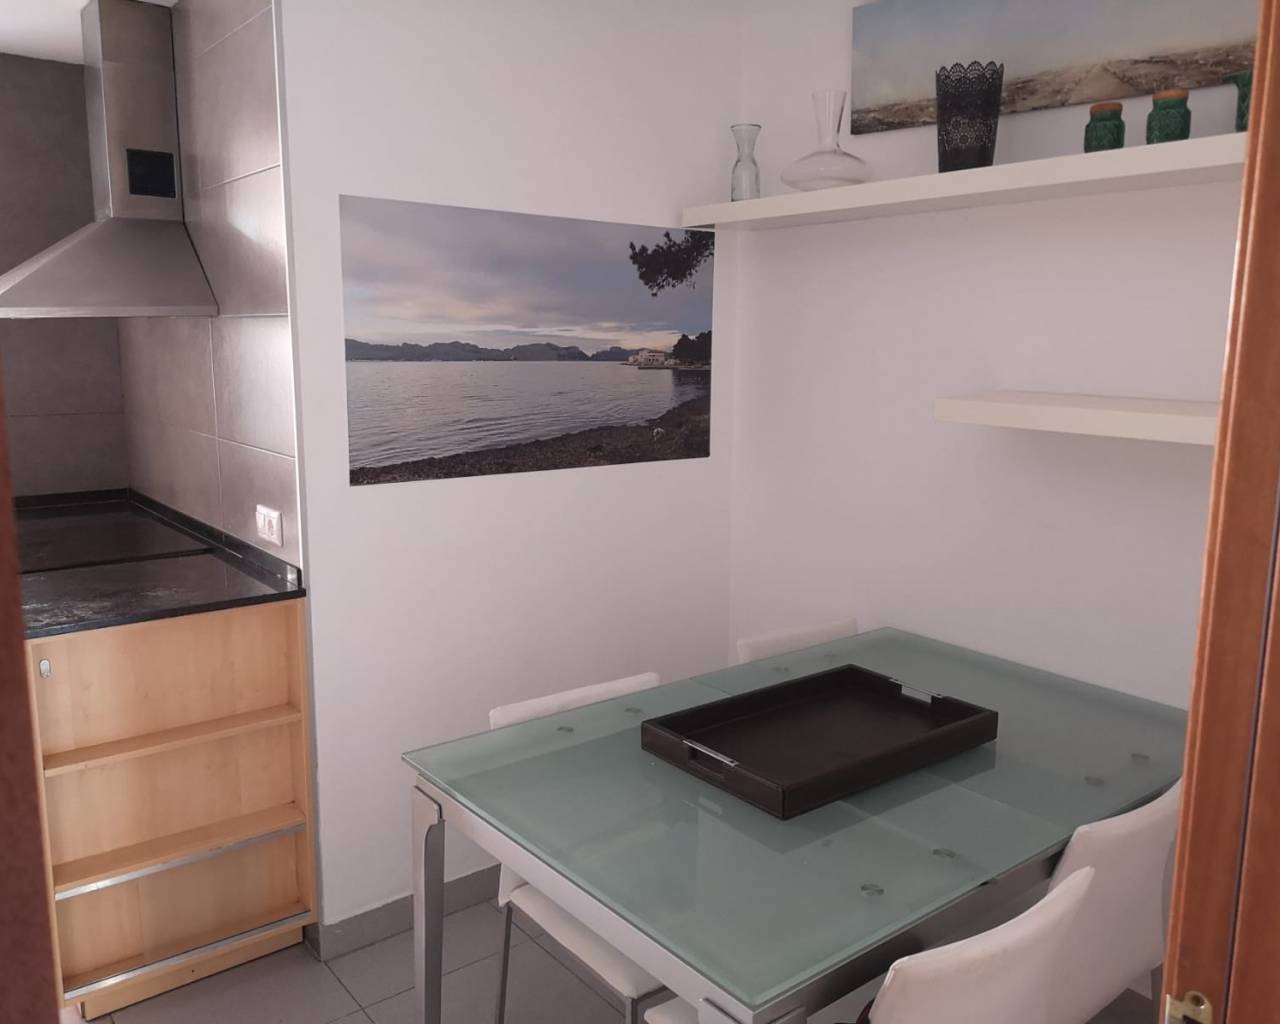 3 bedroom apartment in rent in Palma De Mallorca-Mallorca estate agents